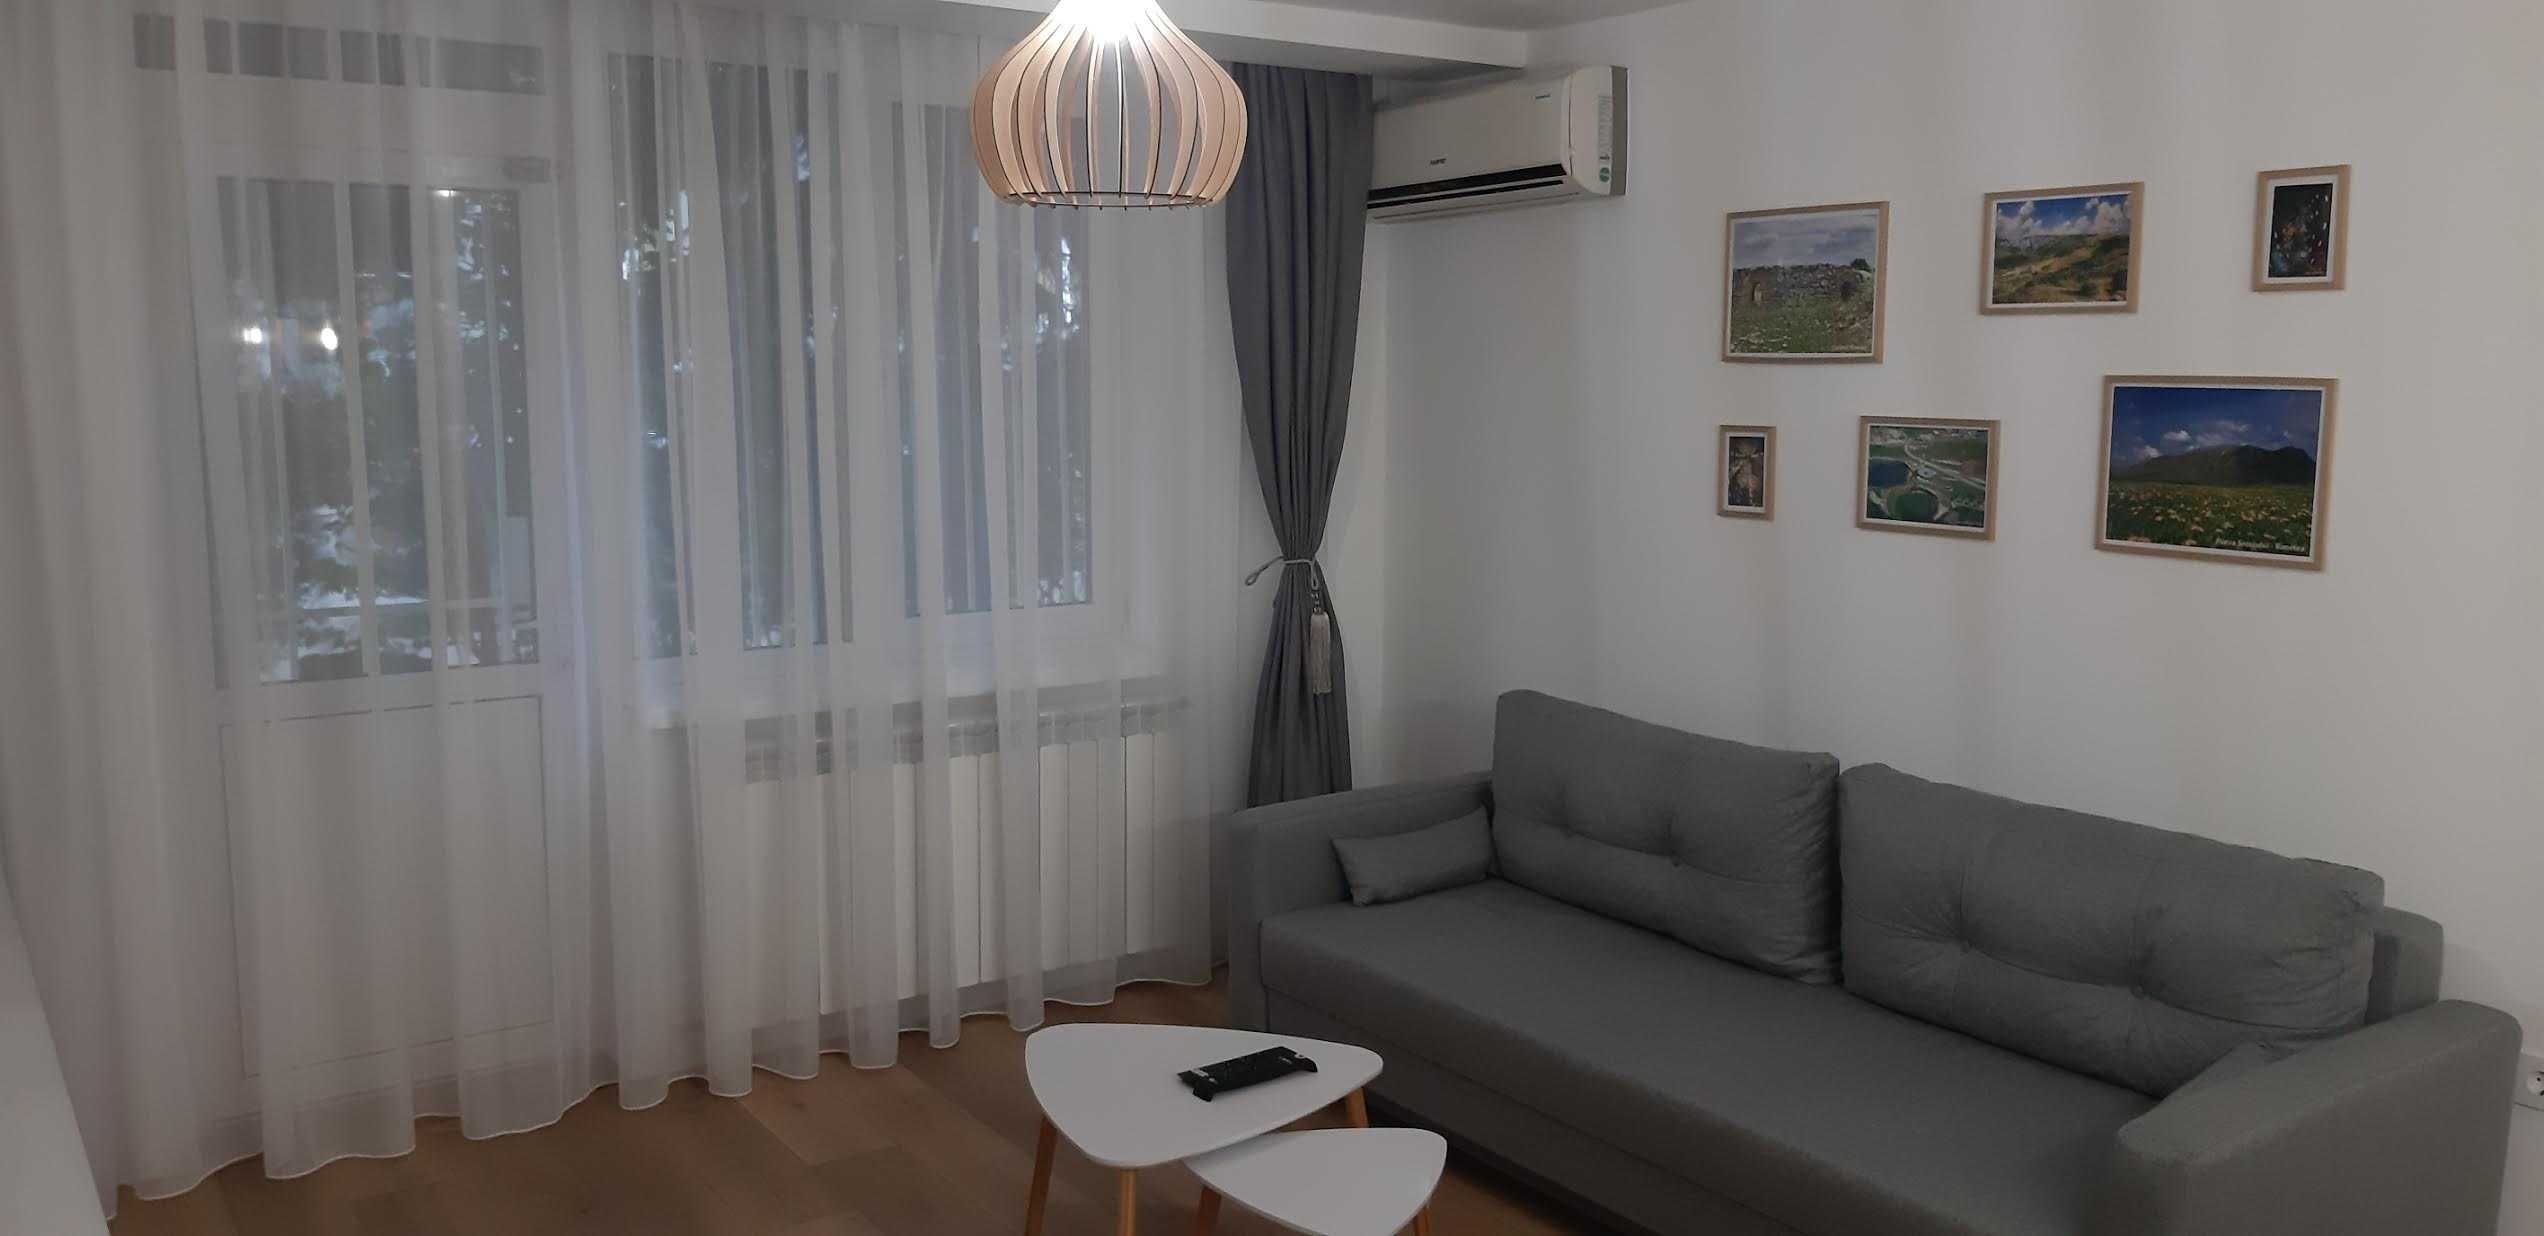 Apartament de inchiriat/Apartment for rent Turda